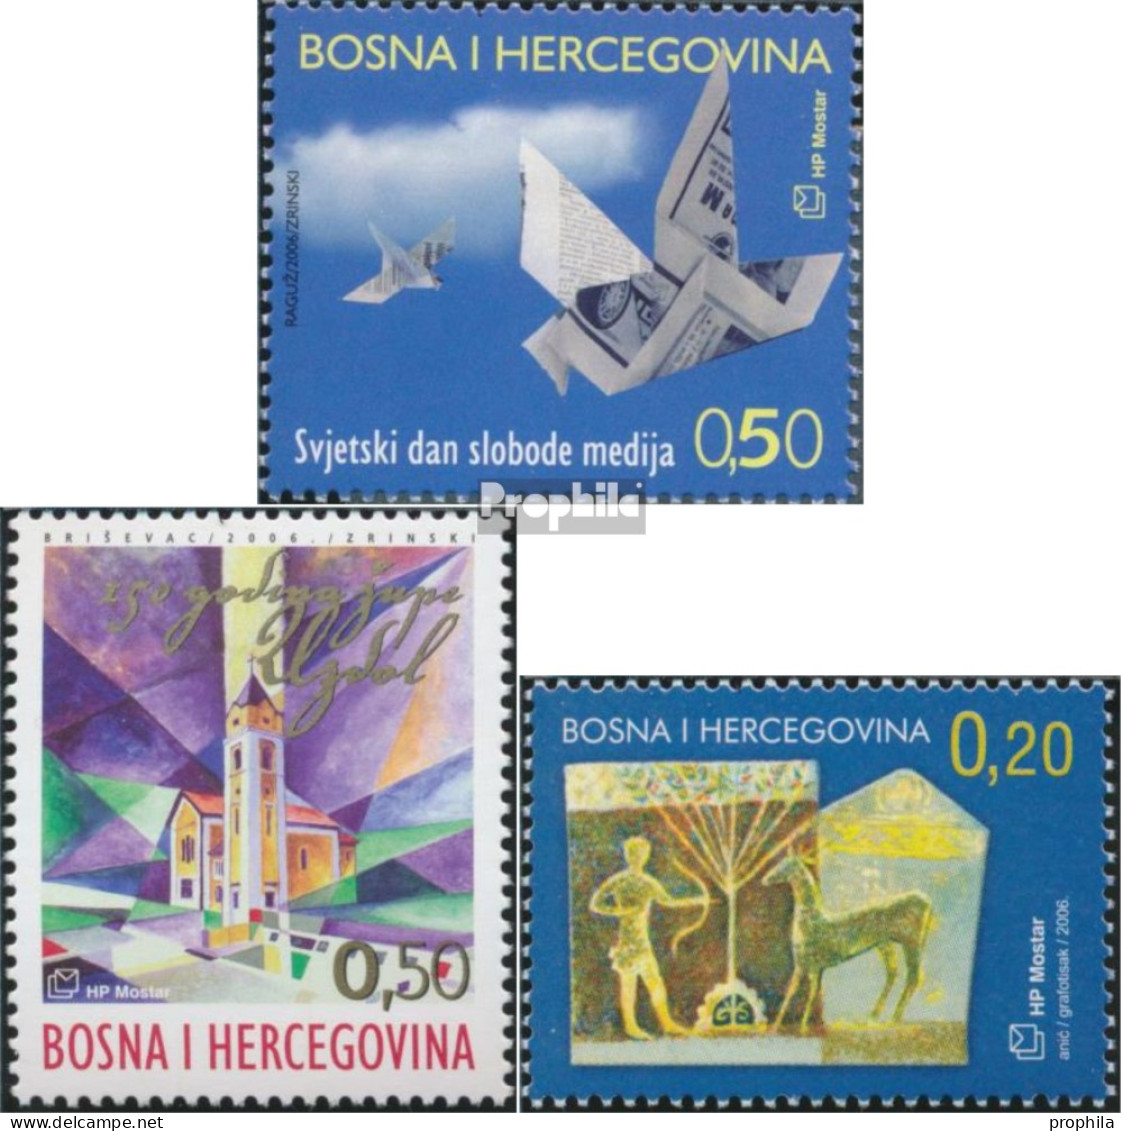 Bosnien - Kroat. Post Mostar 174,181,183 (kompl.Ausg.) Postfrisch 2006 Medienfreiheit, Uzdol, Archäologie - Bosnien-Herzegowina